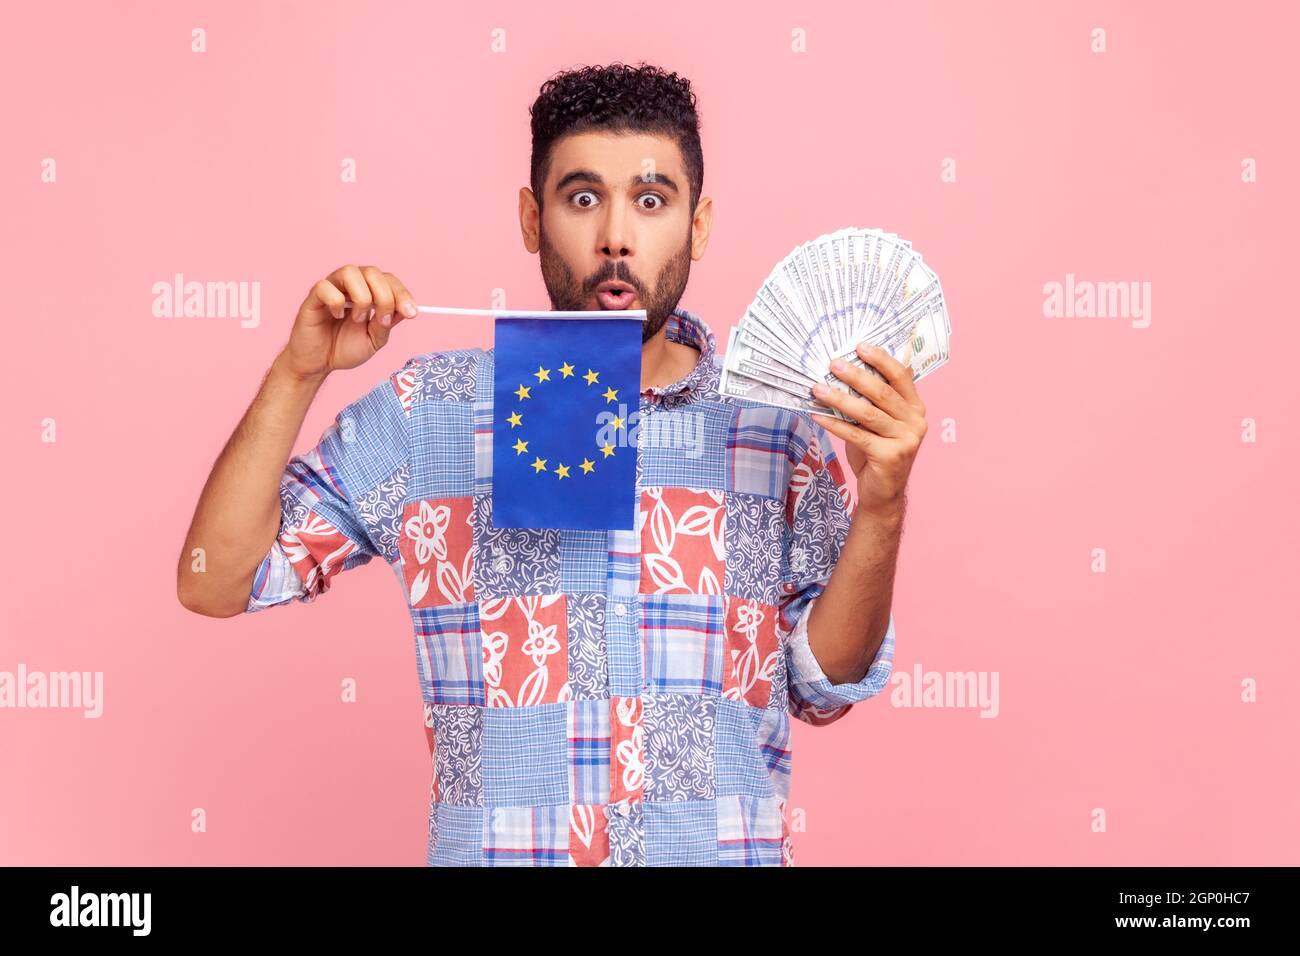 Porträt eines staunenden bärtigen Mannes, der ein blaues Hemd im Casual-Stil trägt, eine Kamera mit großen schockierten Augen sieht und die europäische Flagge und die Banknoten hält. Innenaufnahme des Studios isoliert auf rosa Hintergrund. Stockfoto